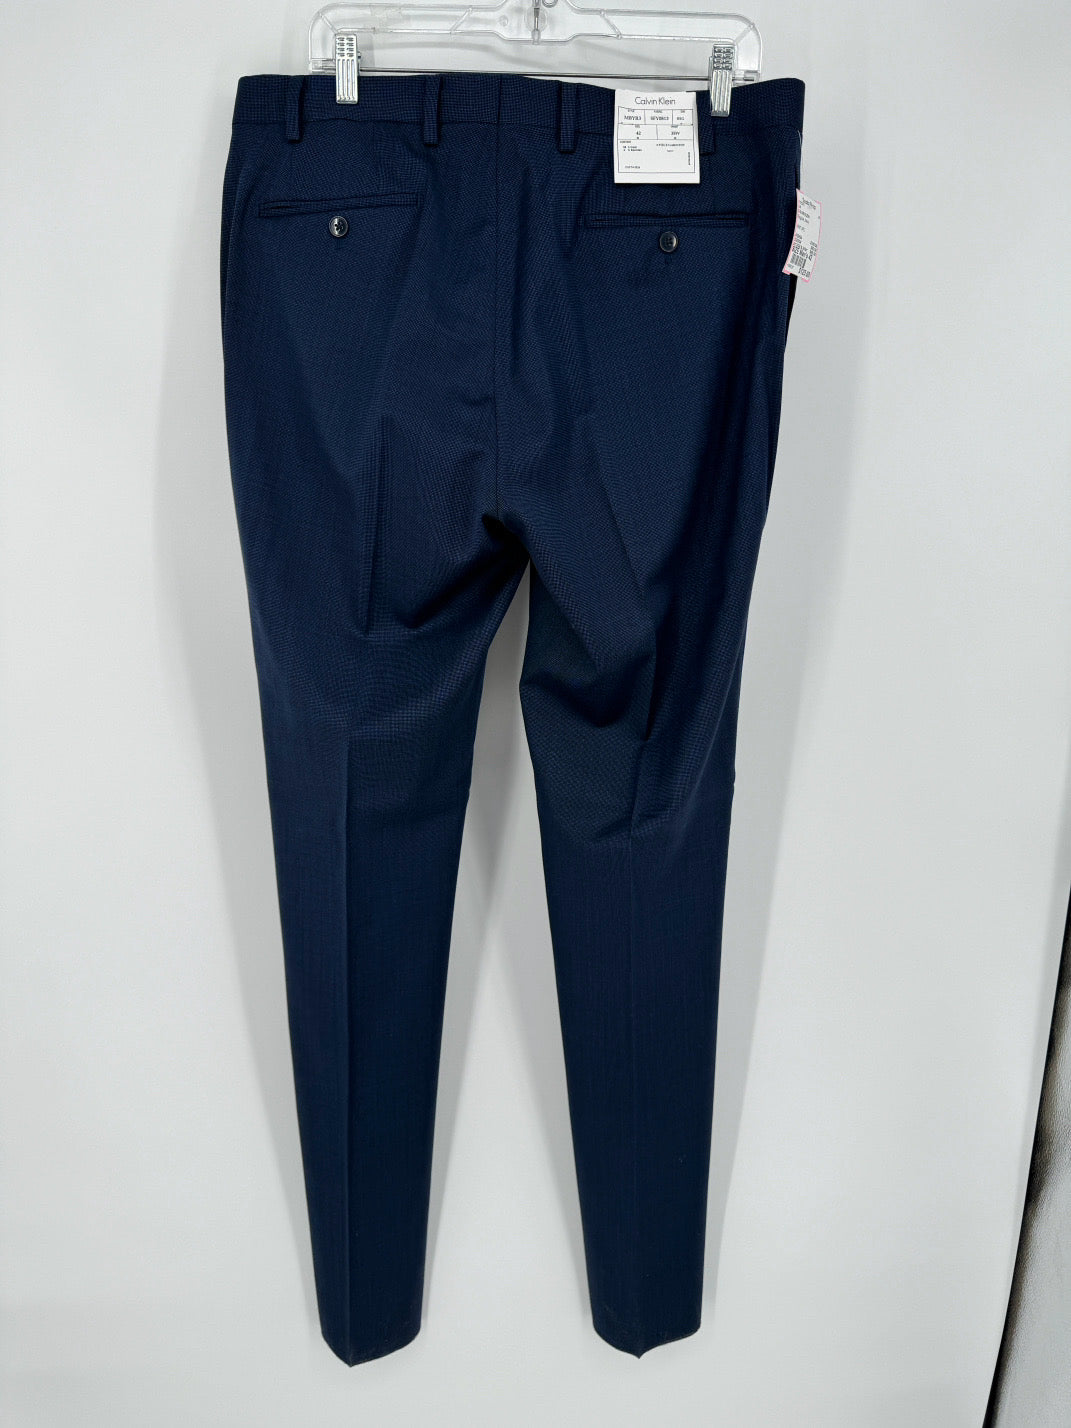 CALVIN KLEIN Size 42 Regular Navy 3 Piece Suit NWT